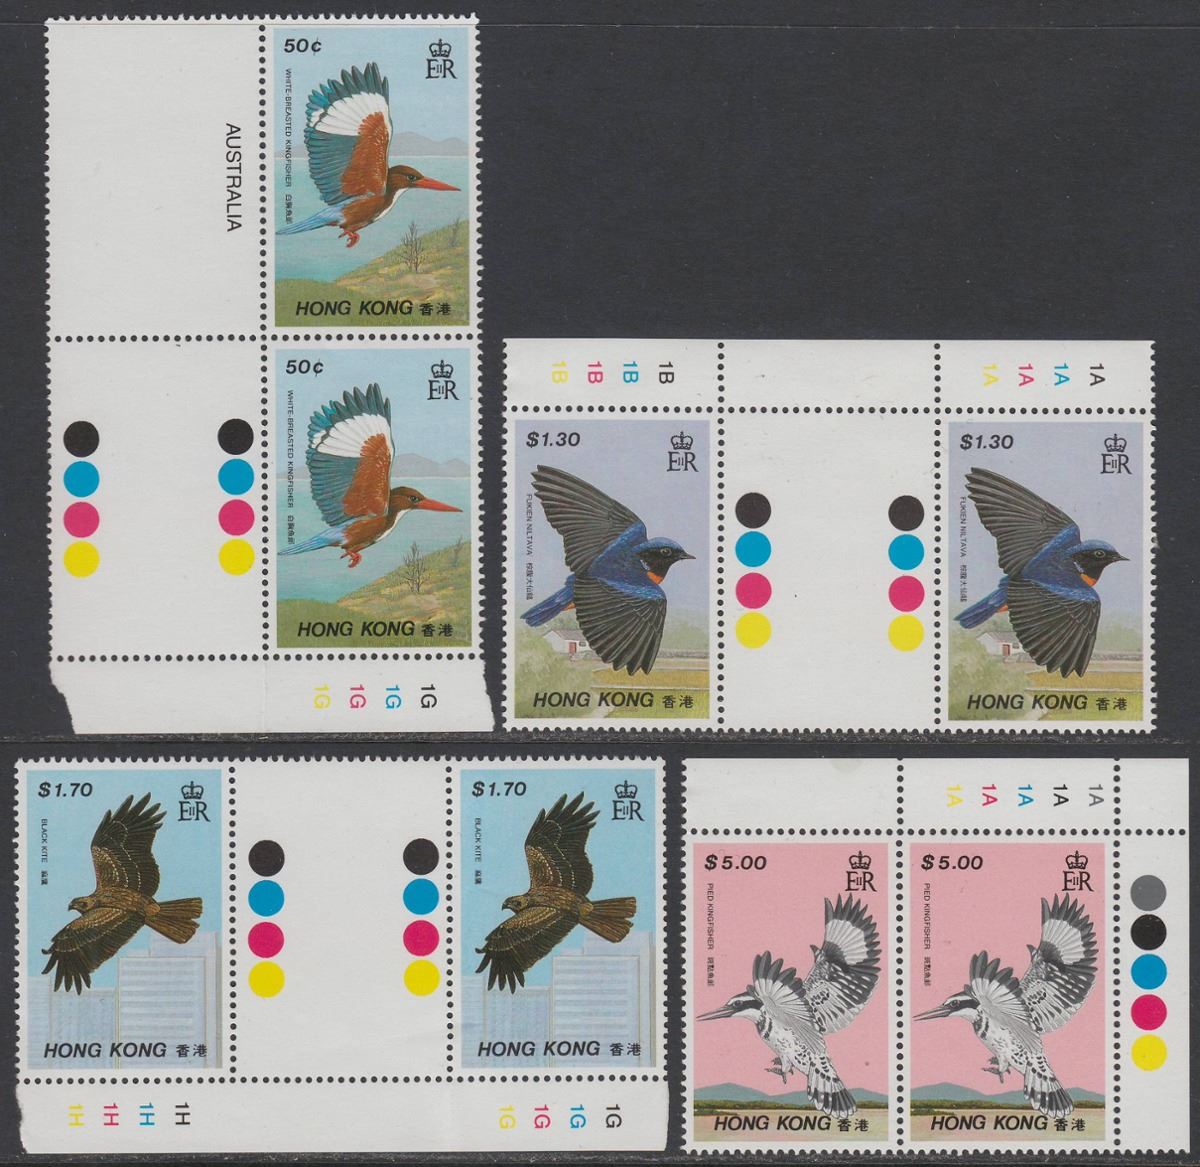 Hong Kong 1988 QEII Birds Plate Number Pairs Set UM Mint SG568-571 cat £17